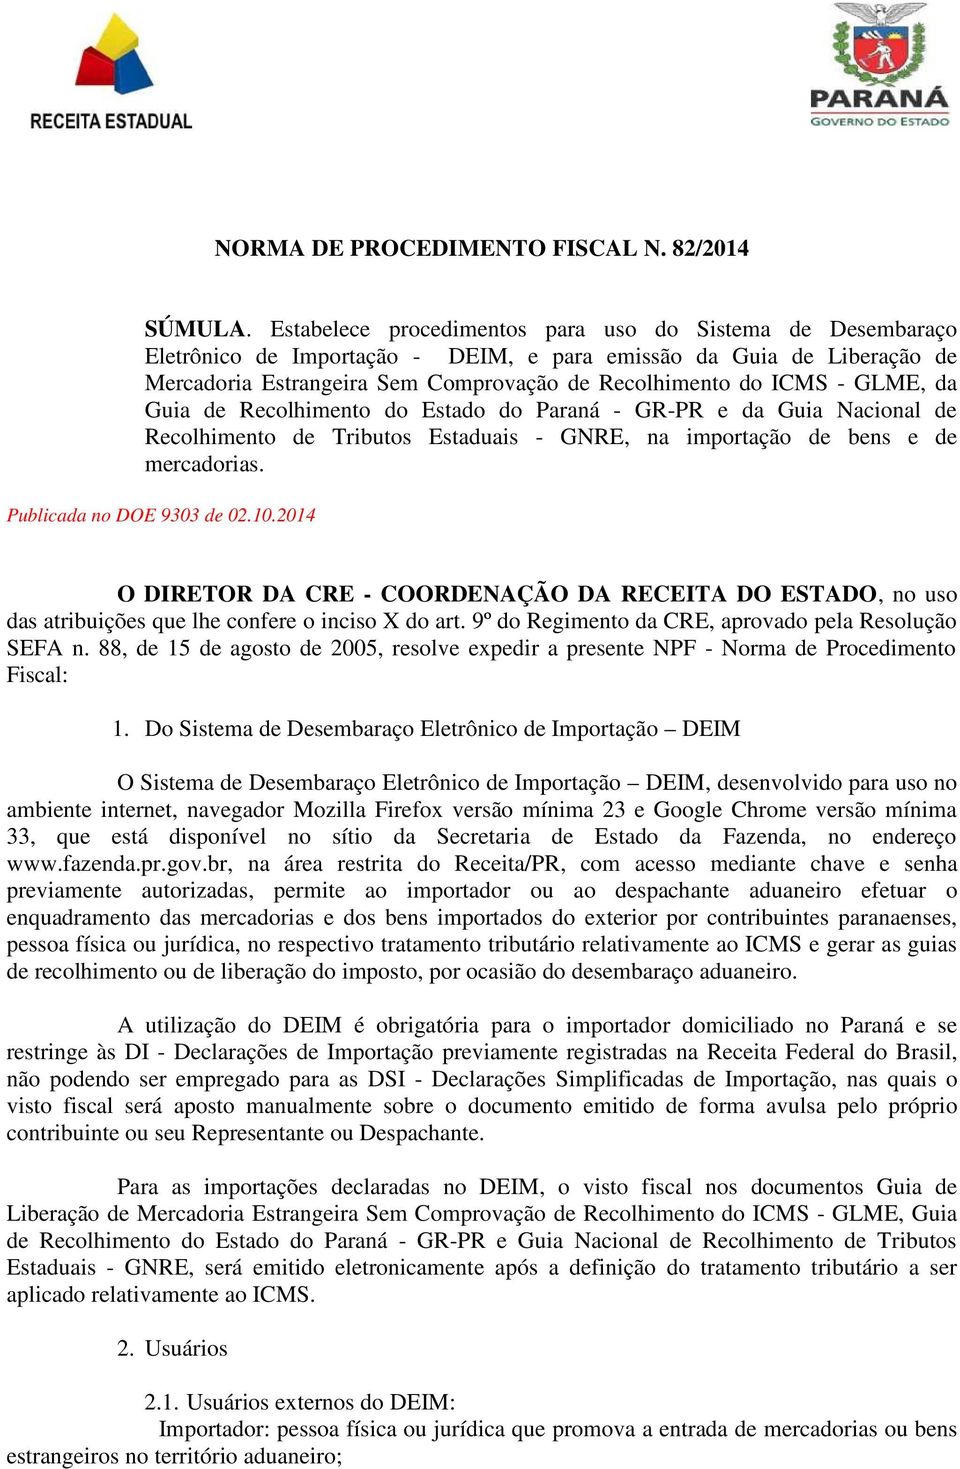 GLME, da Guia de Recolhimento do Estado do Paraná - GR-PR e da Guia Nacional de Recolhimento de Tributos Estaduais - GNRE, na importação de bens e de mercadorias. Publicada no DOE 9303 de 02.10.